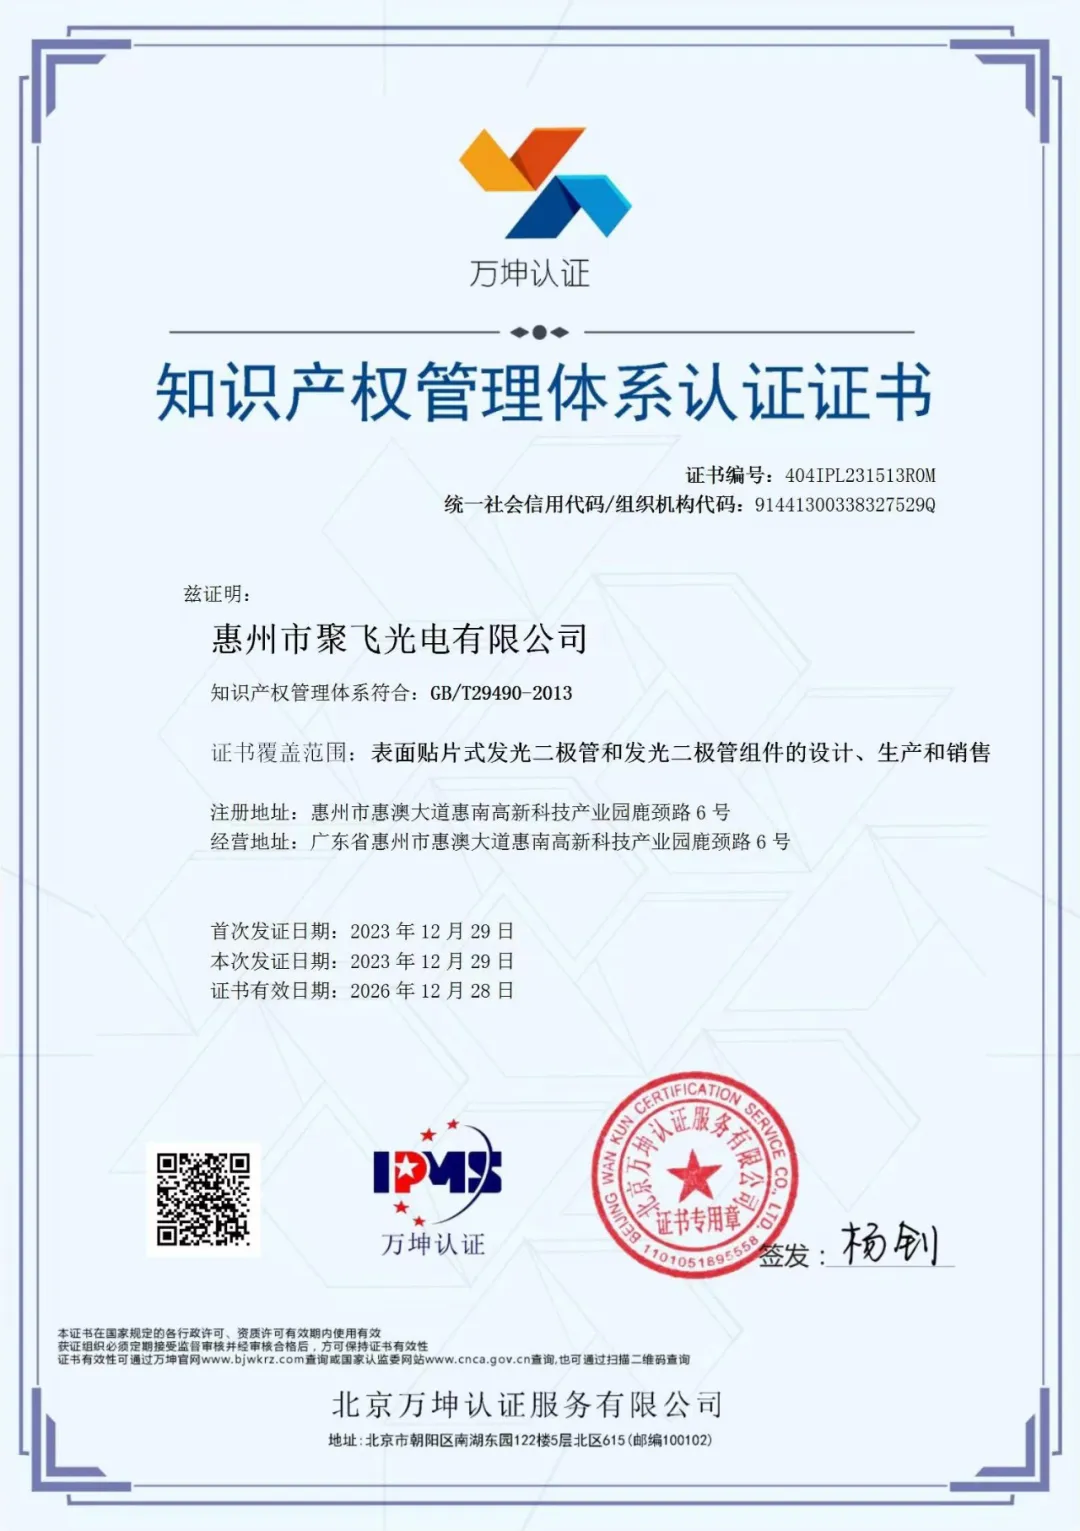 惠州永利皇宫棋牌官网通过企业知识产权管理规范认证